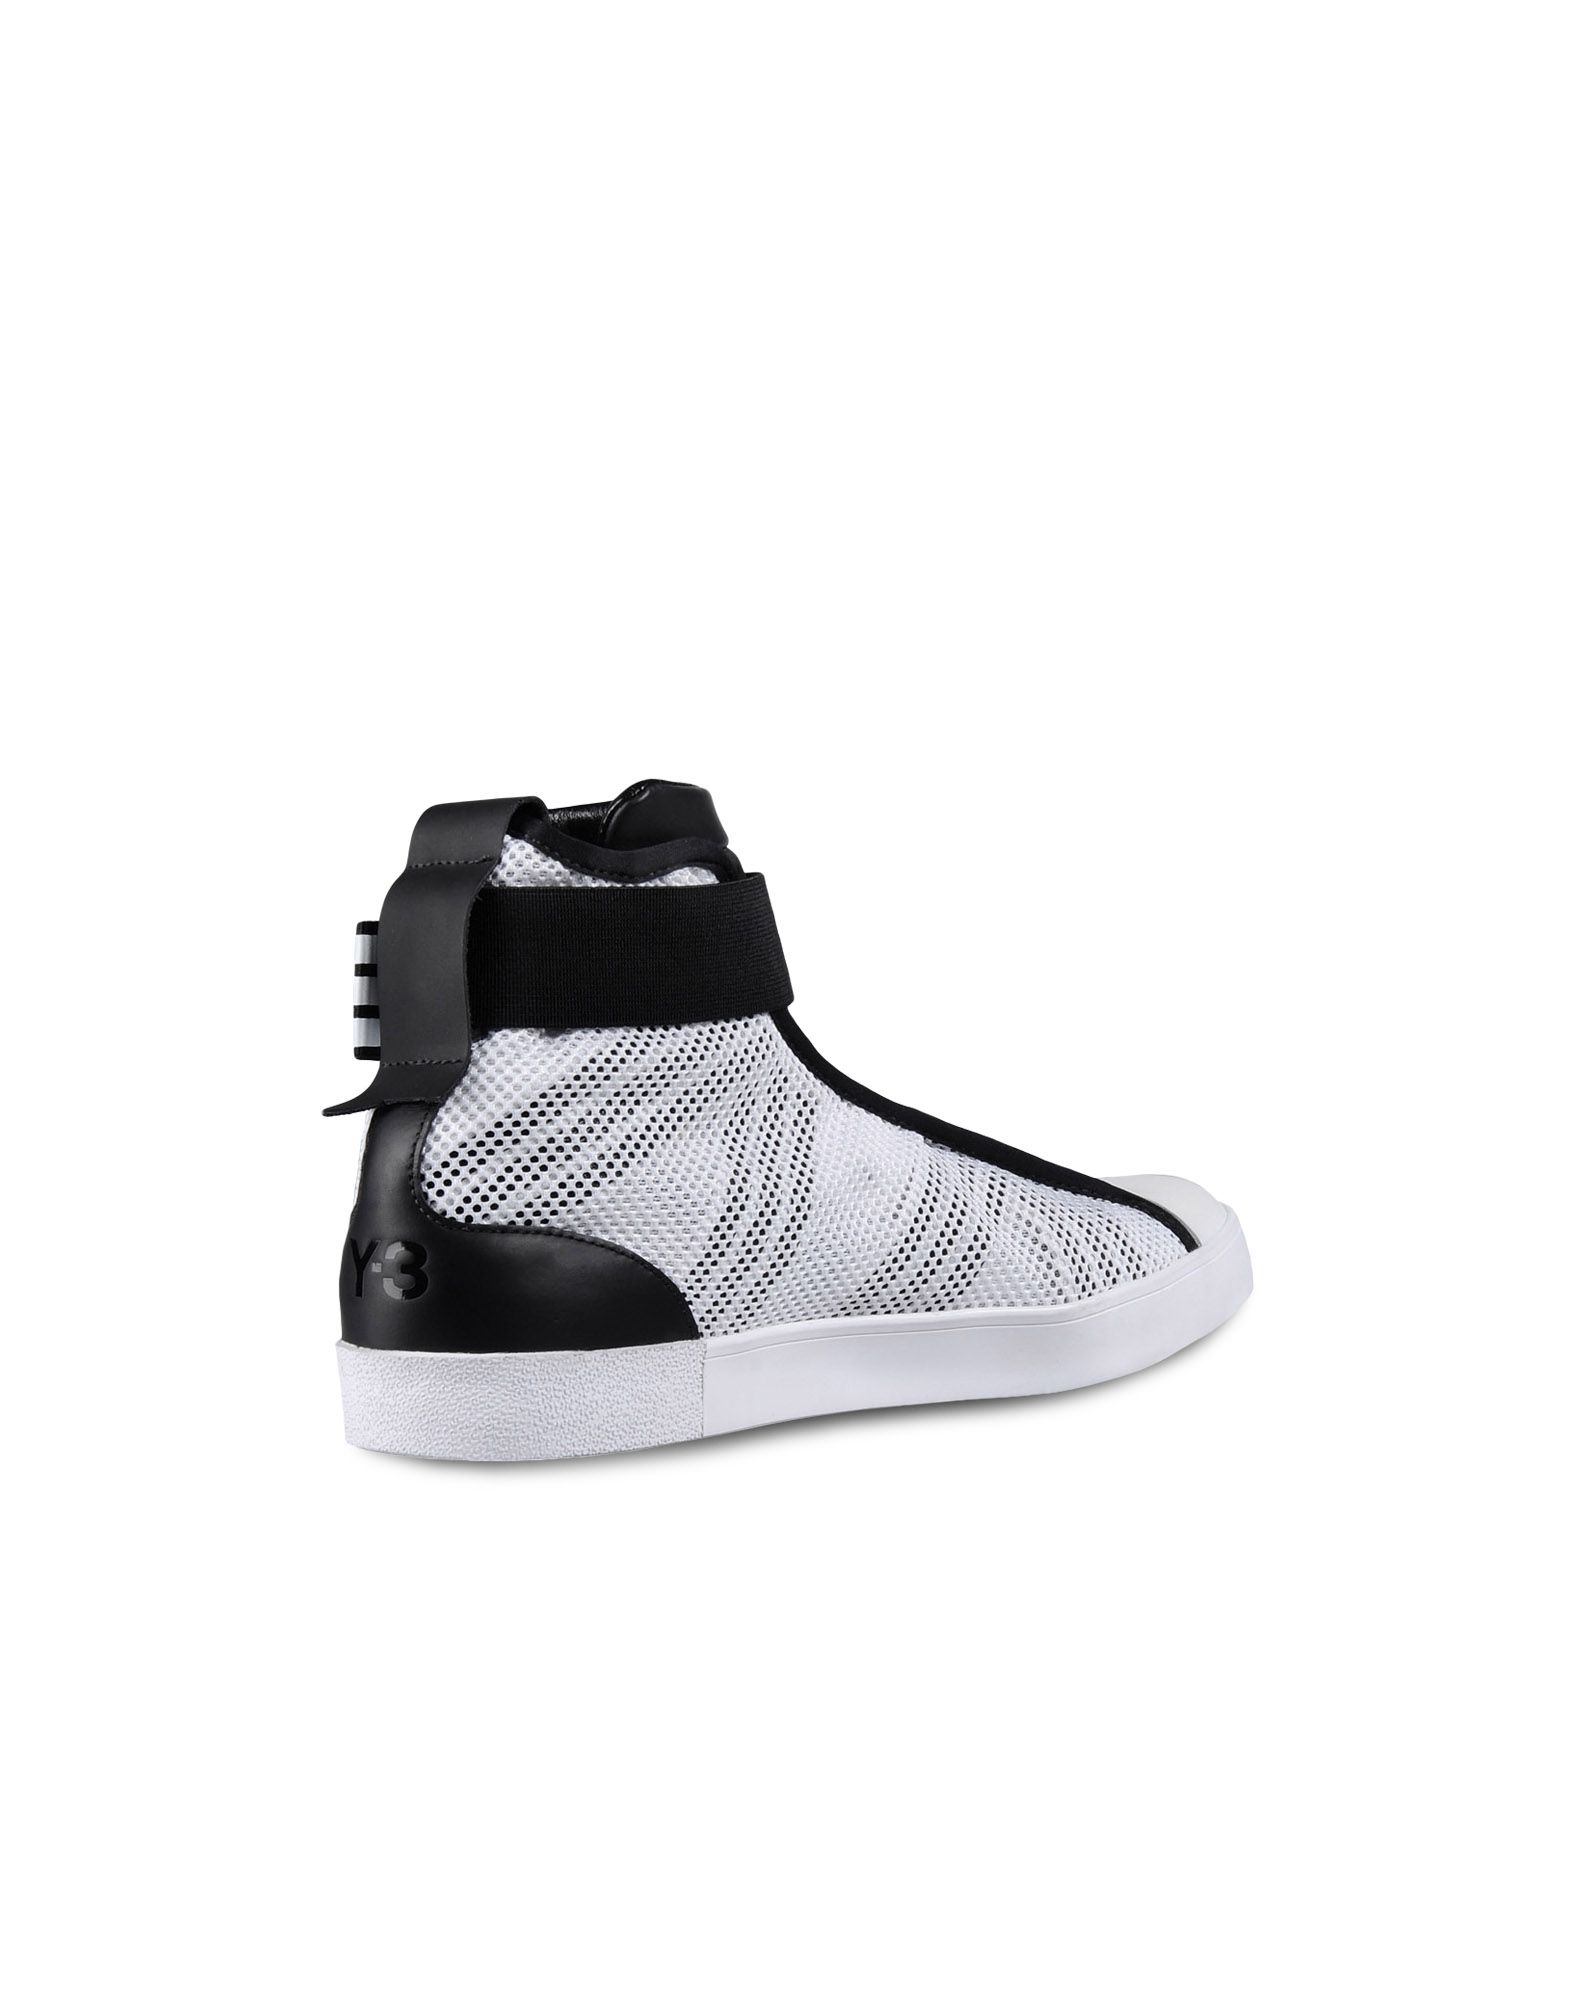 Y 3 LOOP COURT HI ‎ ‎High Top Sneakers‎ ‎ ‎ | Adidas Y-3 Official Site